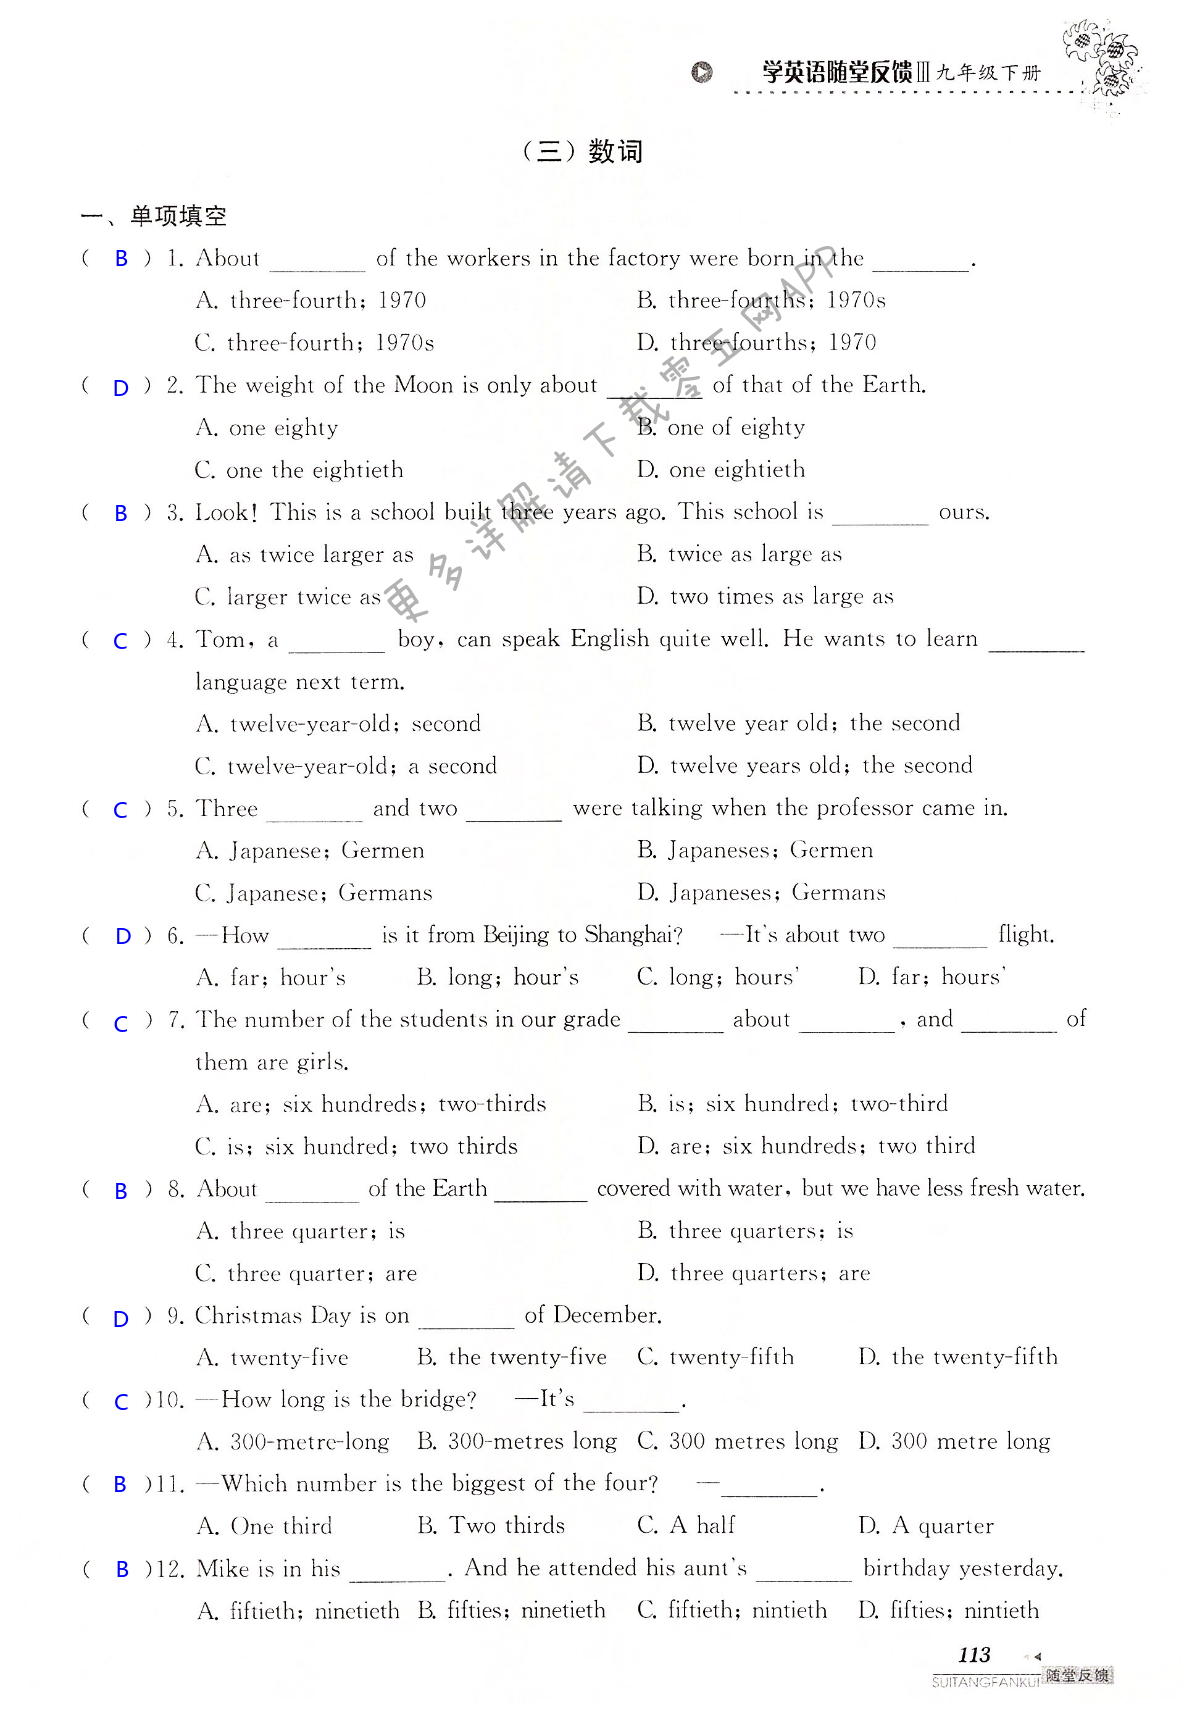 中考英语总复习 语法部分 - 第113页